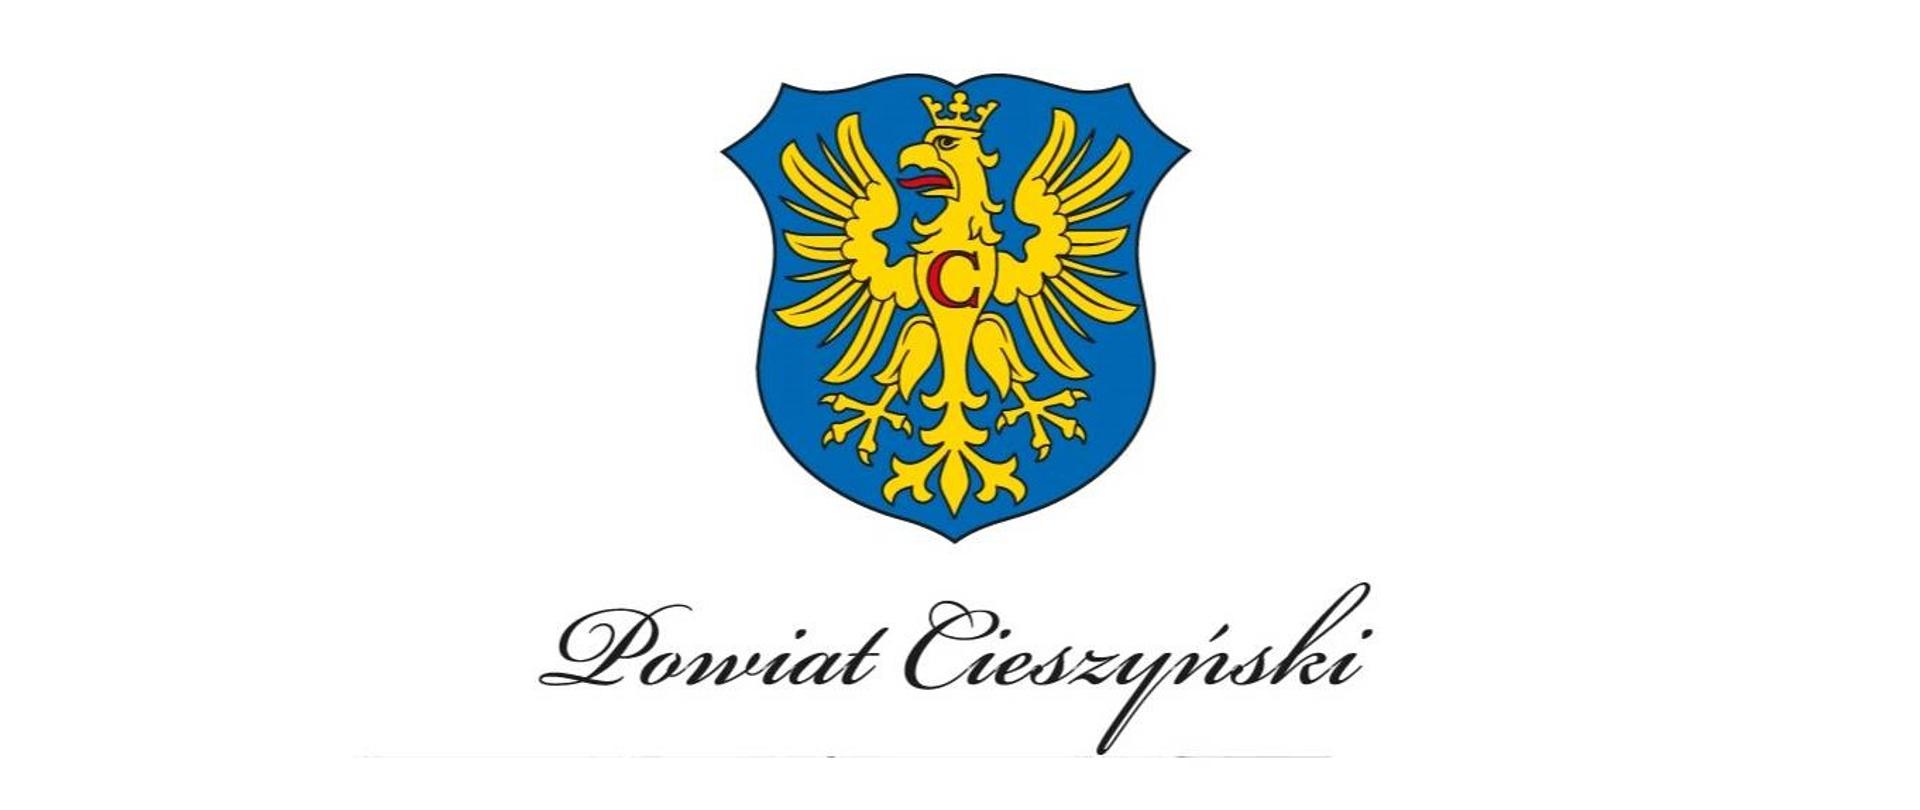 W błękitnym polu złoty orzeł w koronie o czerwonym języku z czerwoną literą C na piersi. Poniżej stylizowany napis kursywą Powiat Cieszyński. 